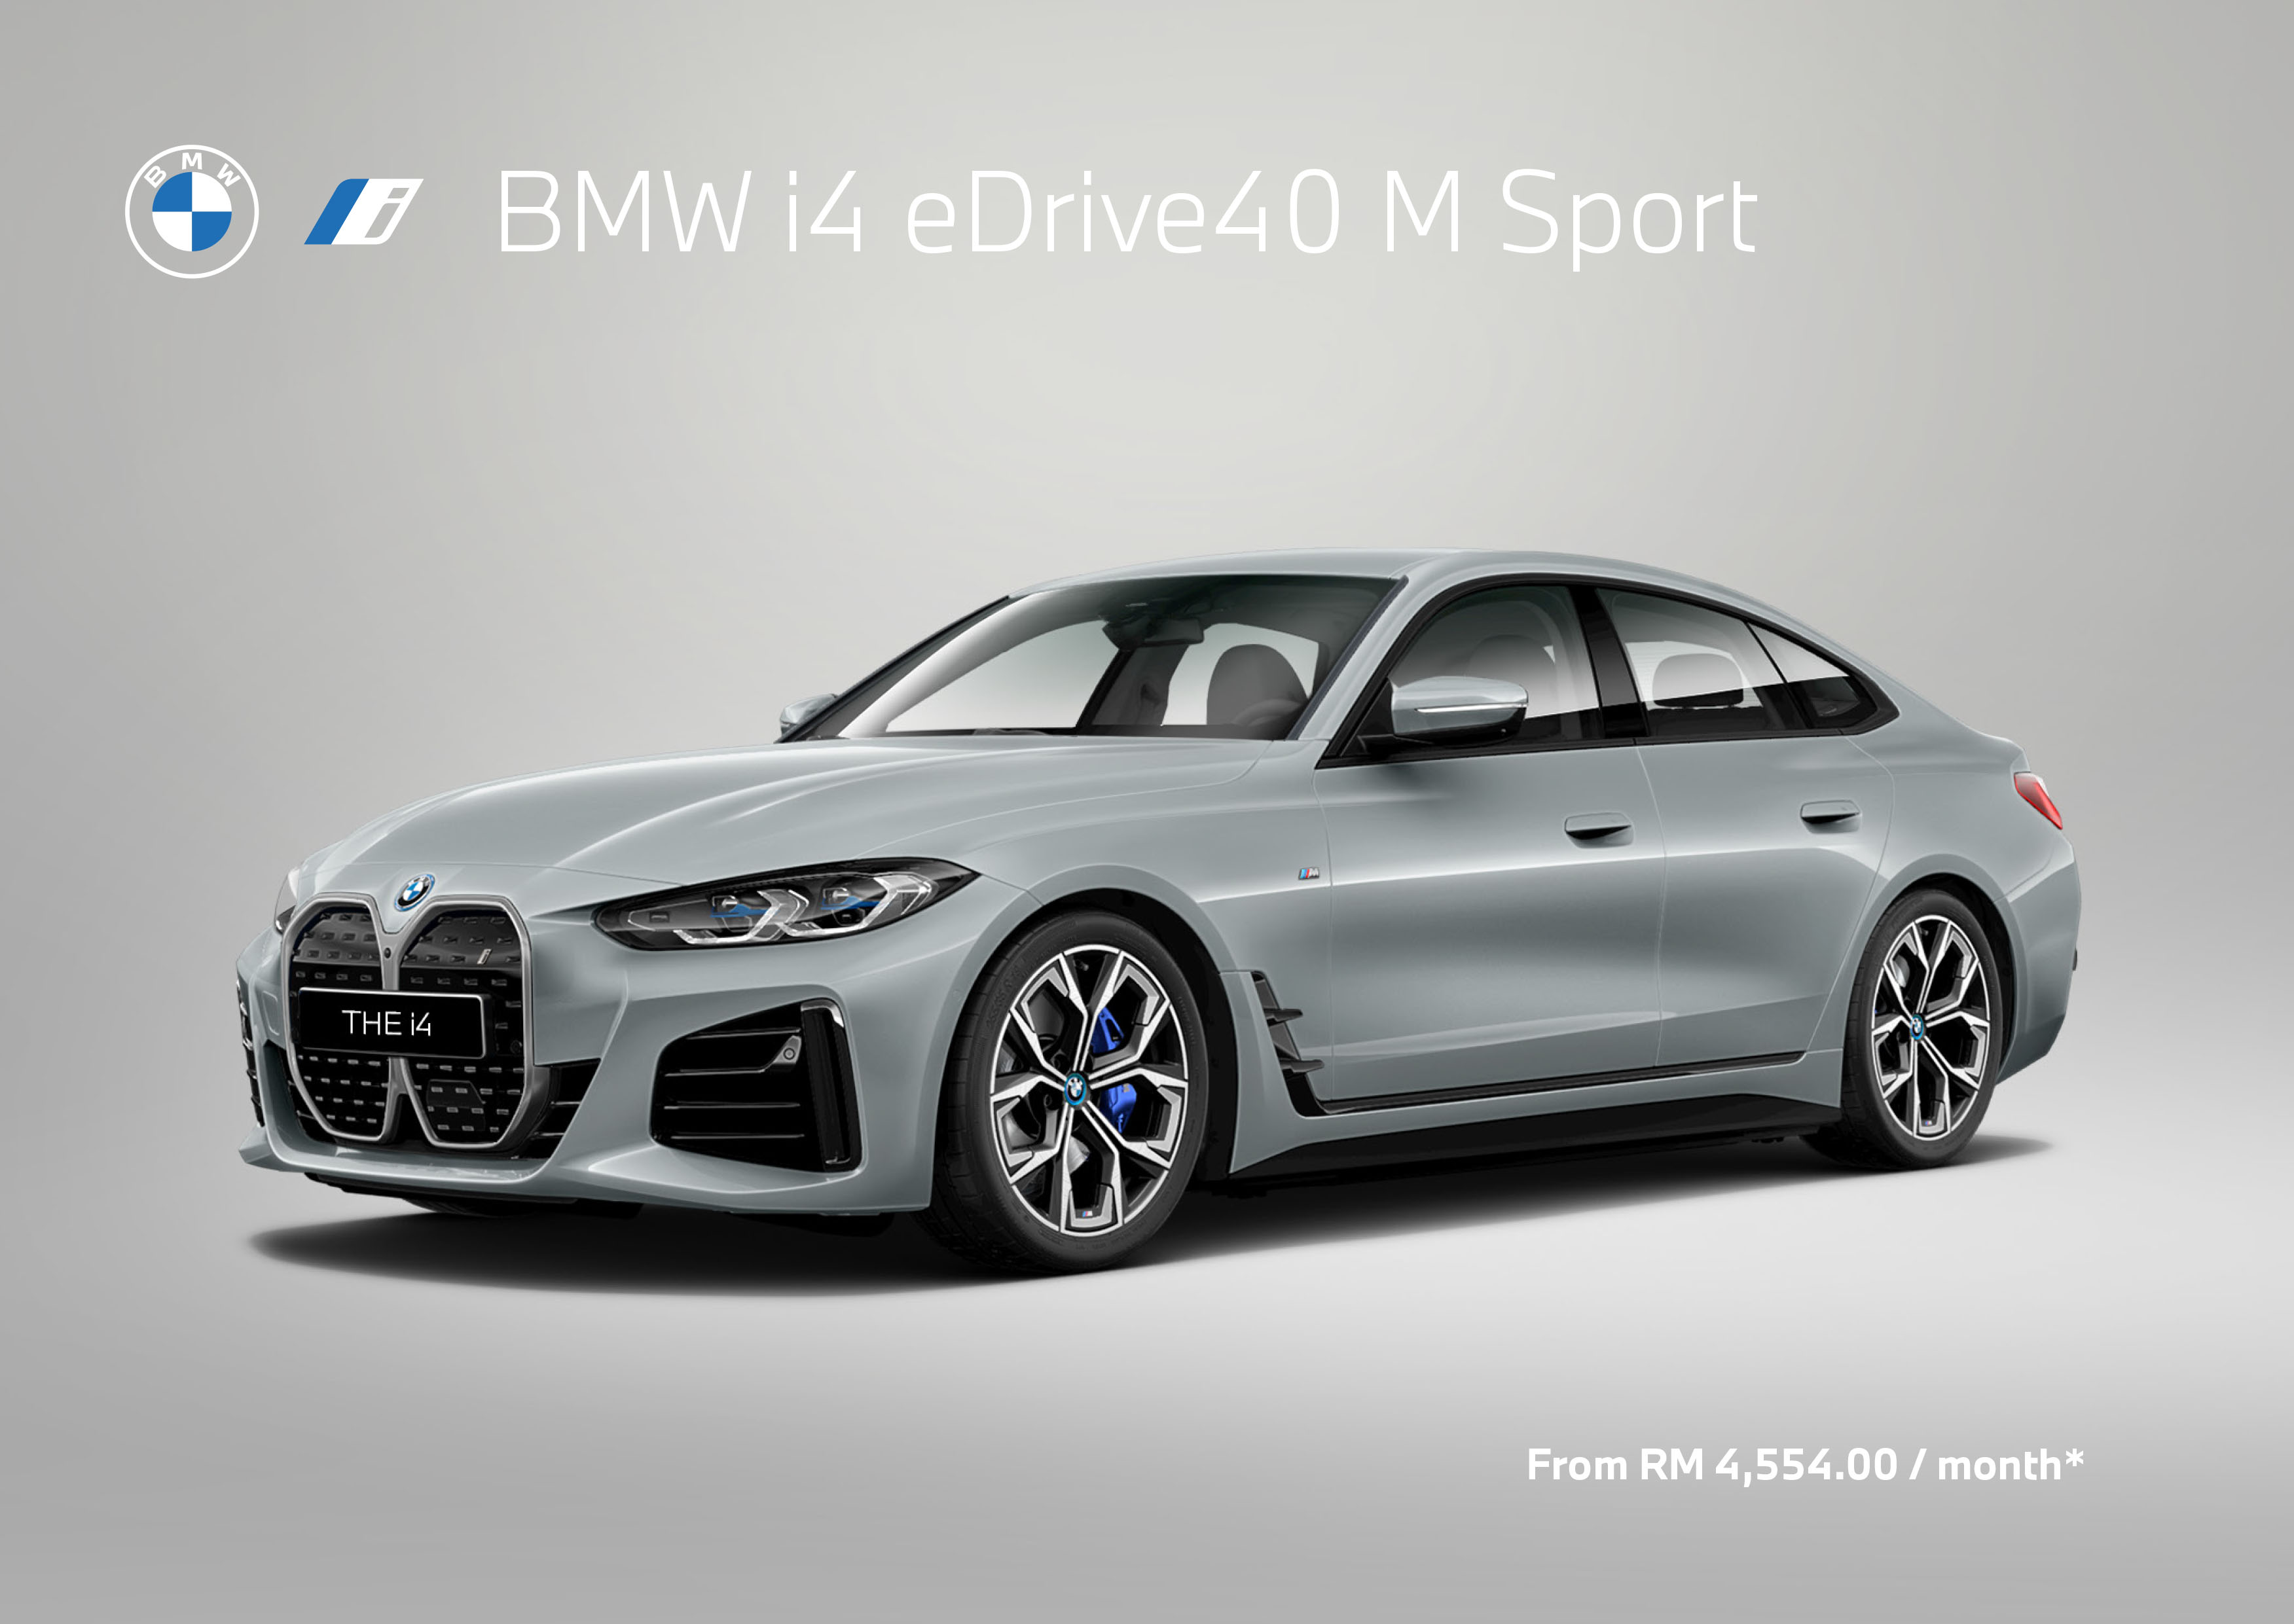 BMW_specs_sheet_i4 eDrive40 M Sport_PM_04